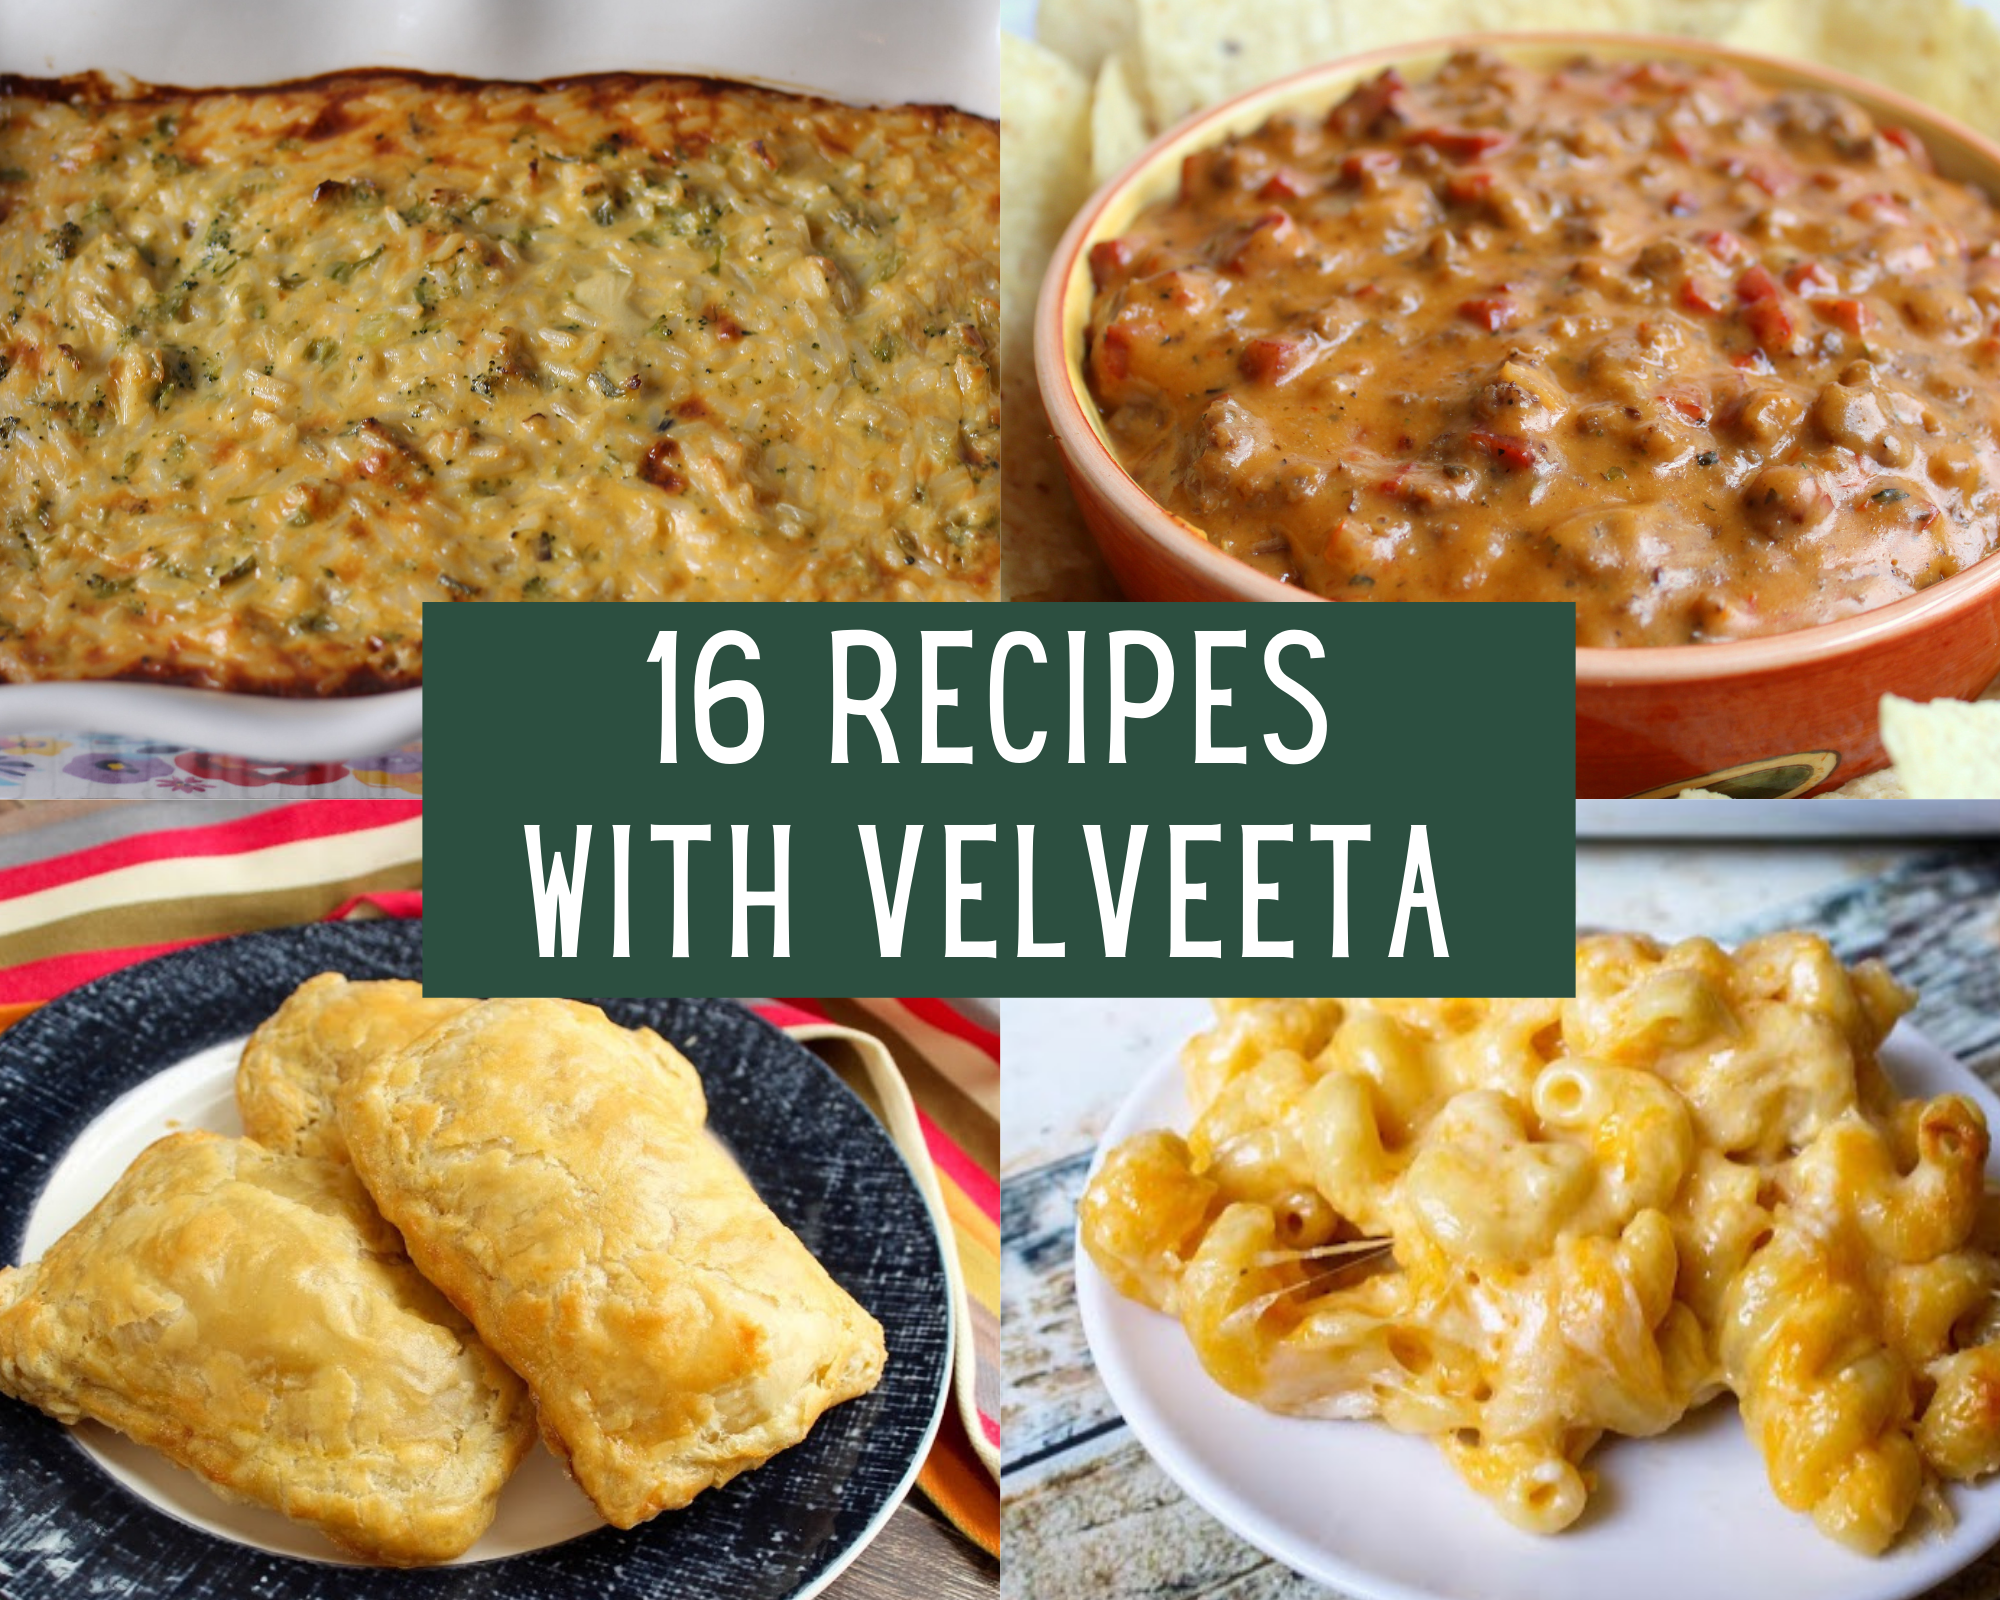 Recipes with velveeta cheese